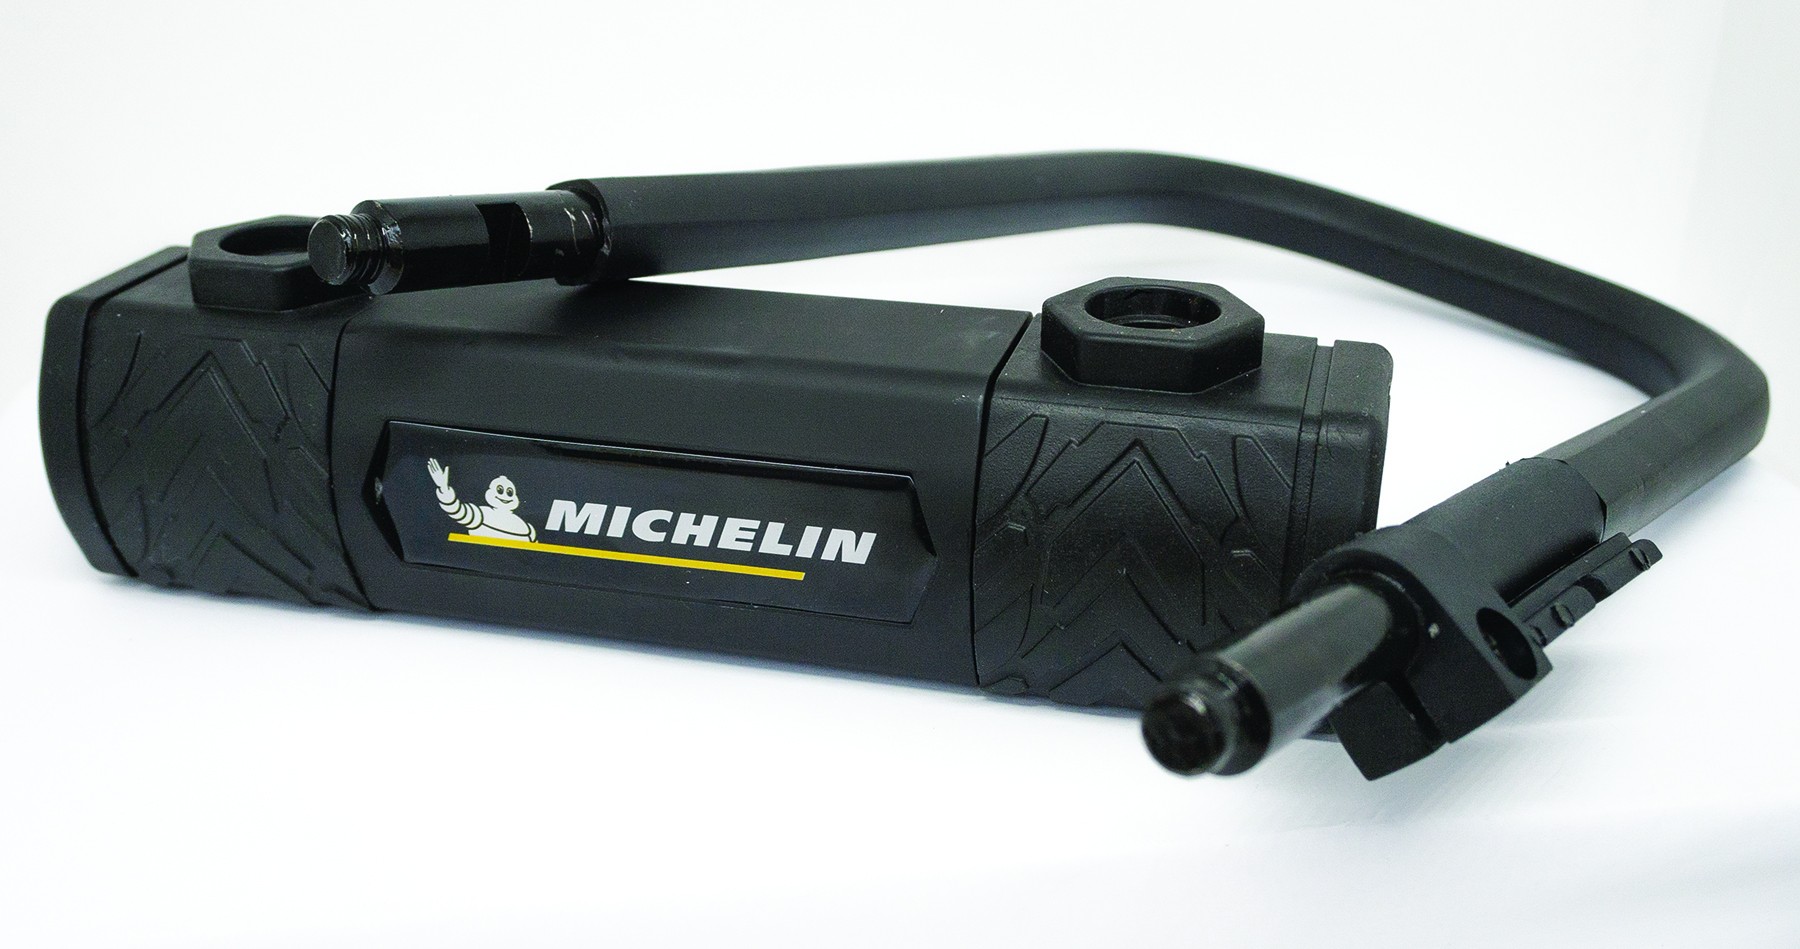 Michelin ANTIVOL VELO U 105 x 170mm A CLE EN ACIER NOIR AVEC SUPPORT FIXATION CADRE